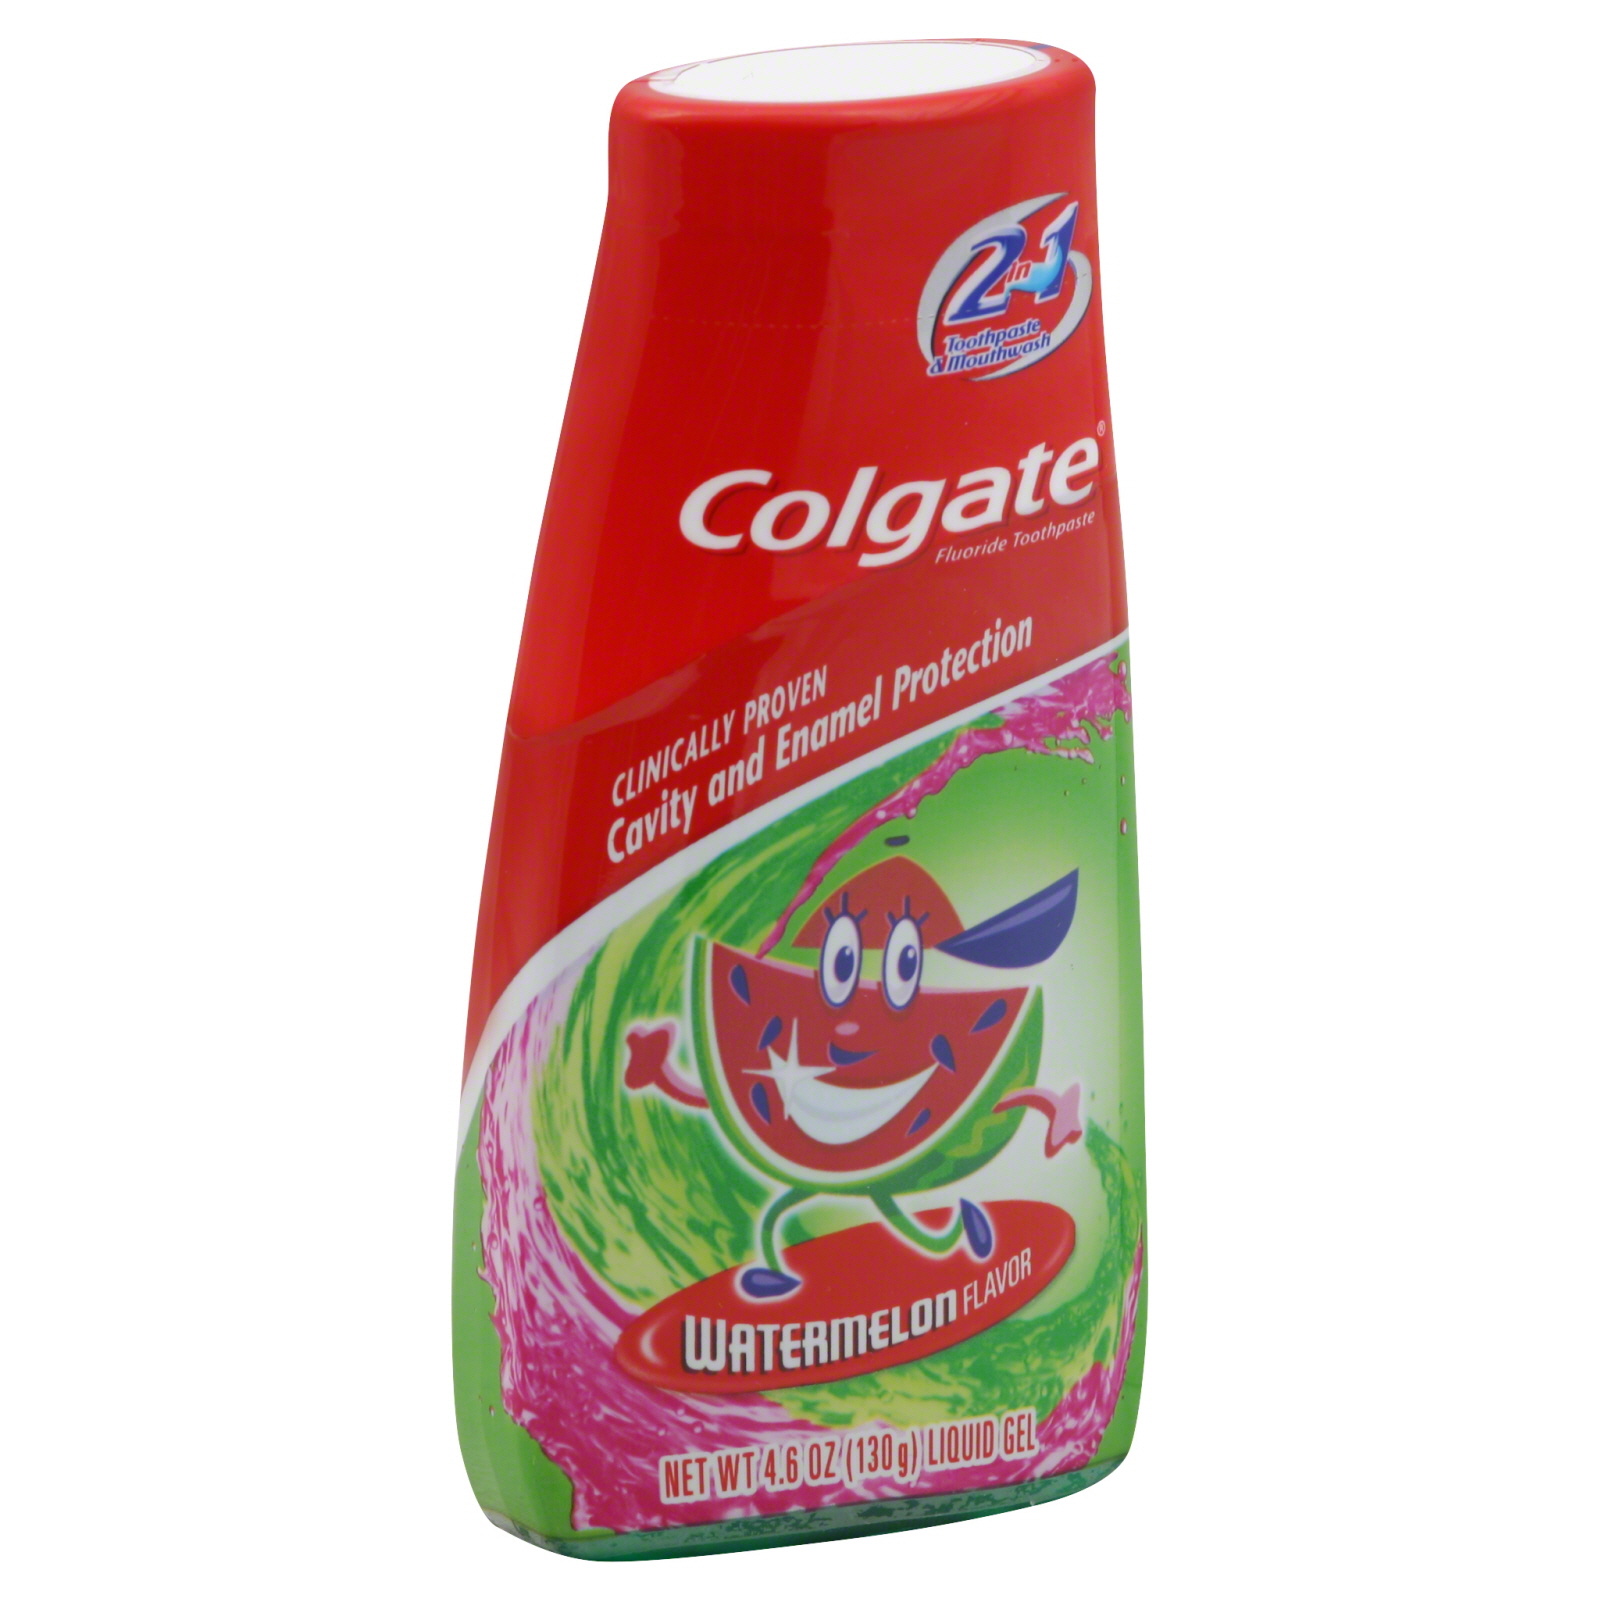 2 in 1 Kids Toothpaste & Mouthwash, Watermelon Flavor, Liquid Gel, 4.6 oz (130 g)